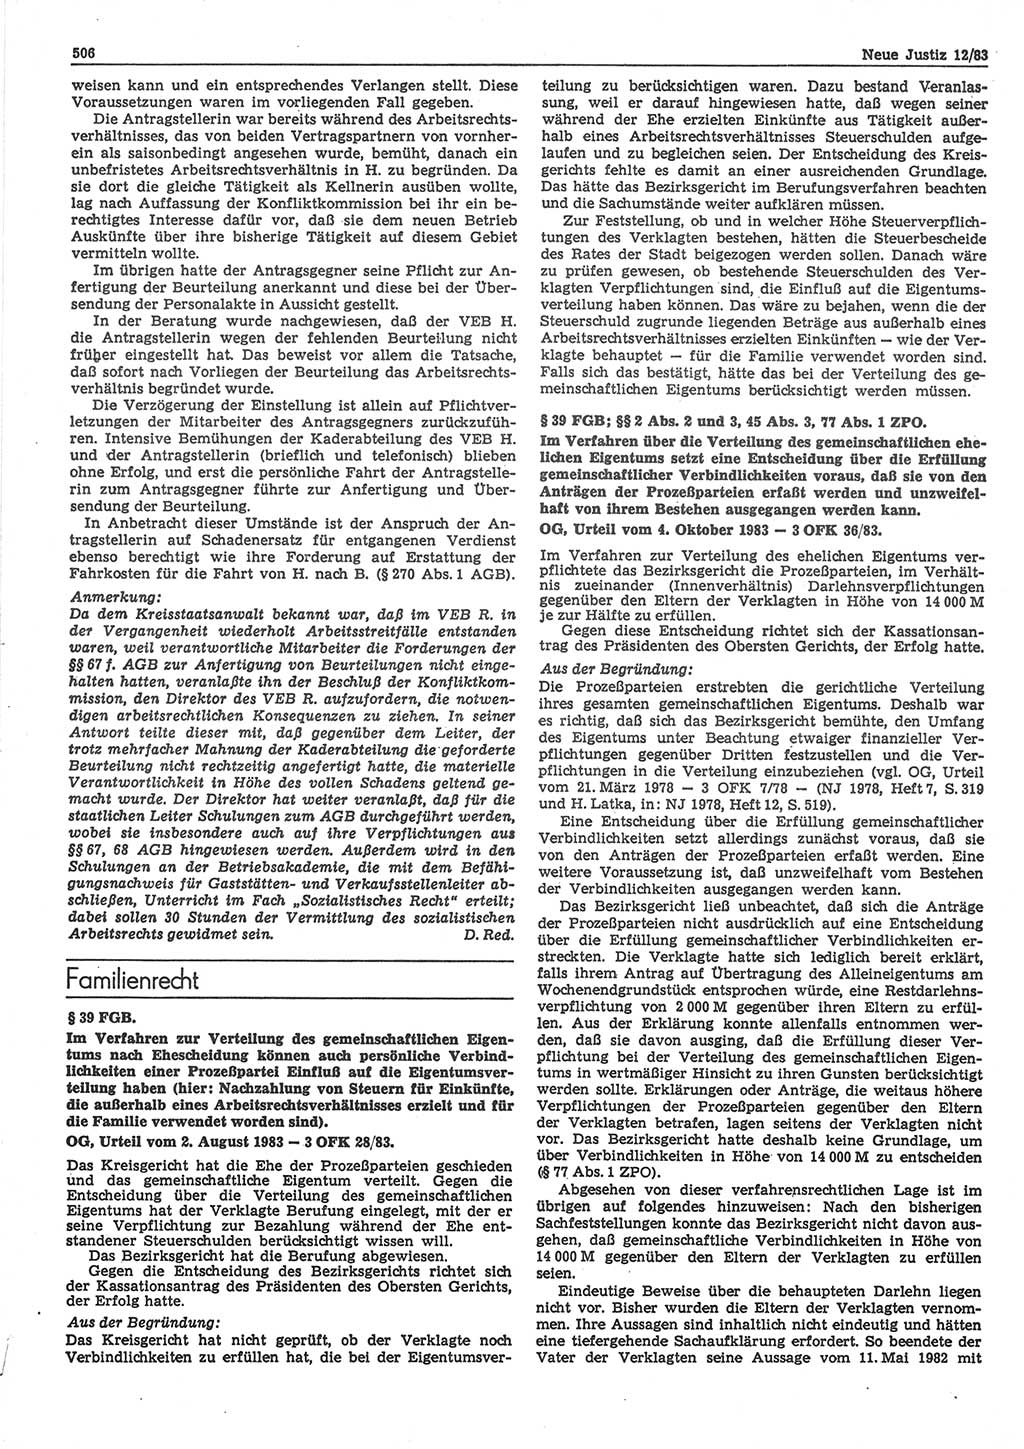 Neue Justiz (NJ), Zeitschrift für sozialistisches Recht und Gesetzlichkeit [Deutsche Demokratische Republik (DDR)], 37. Jahrgang 1983, Seite 506 (NJ DDR 1983, S. 506)